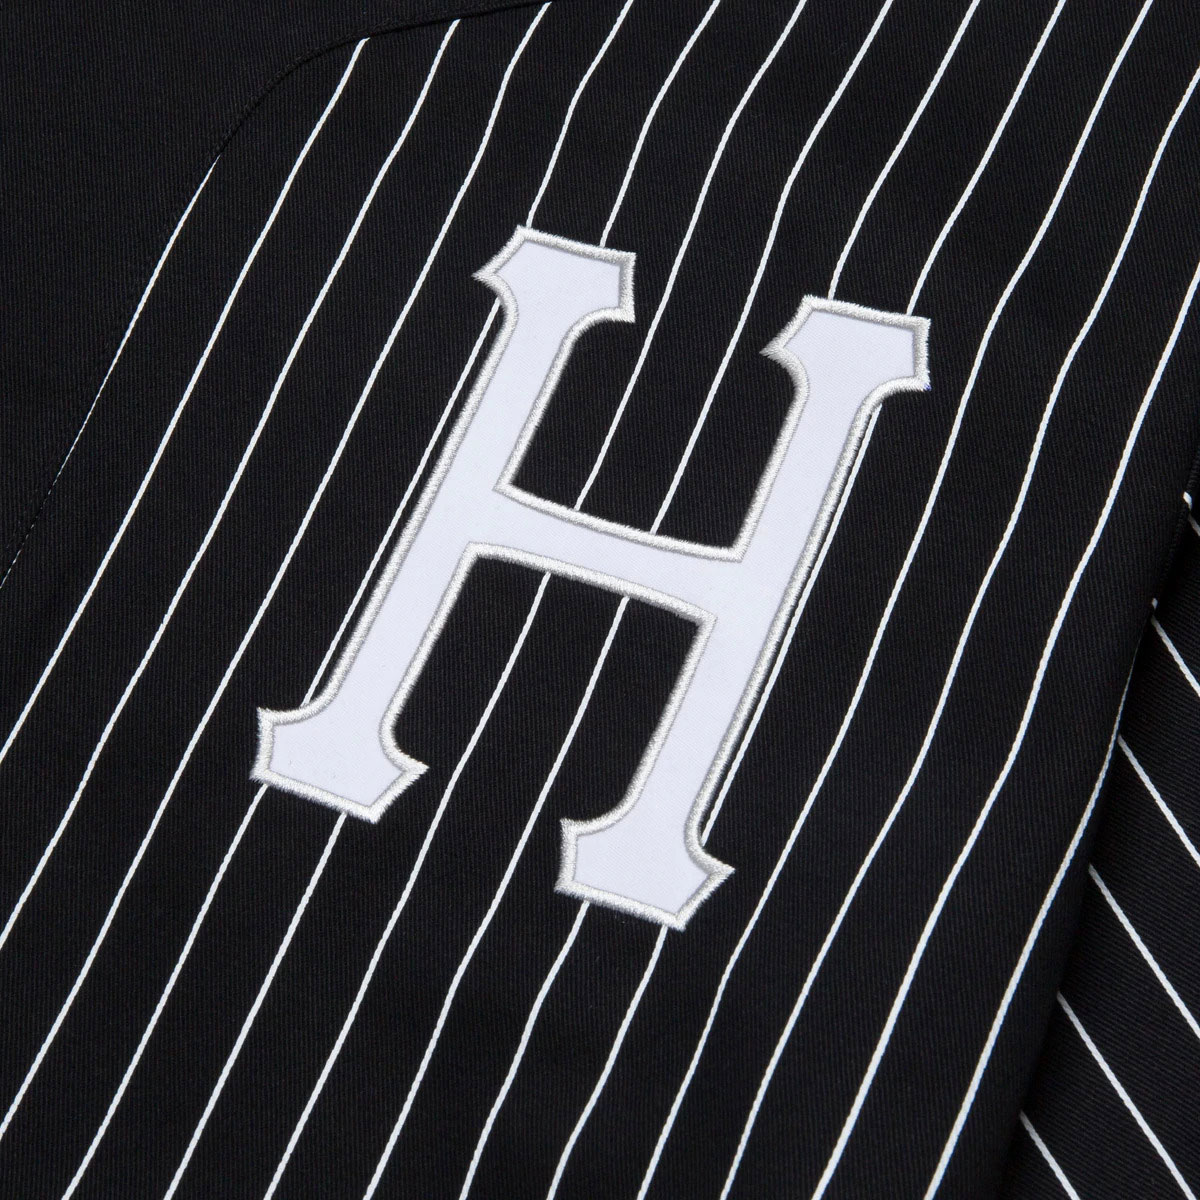 HUF Forever Baseball Jersey - Black